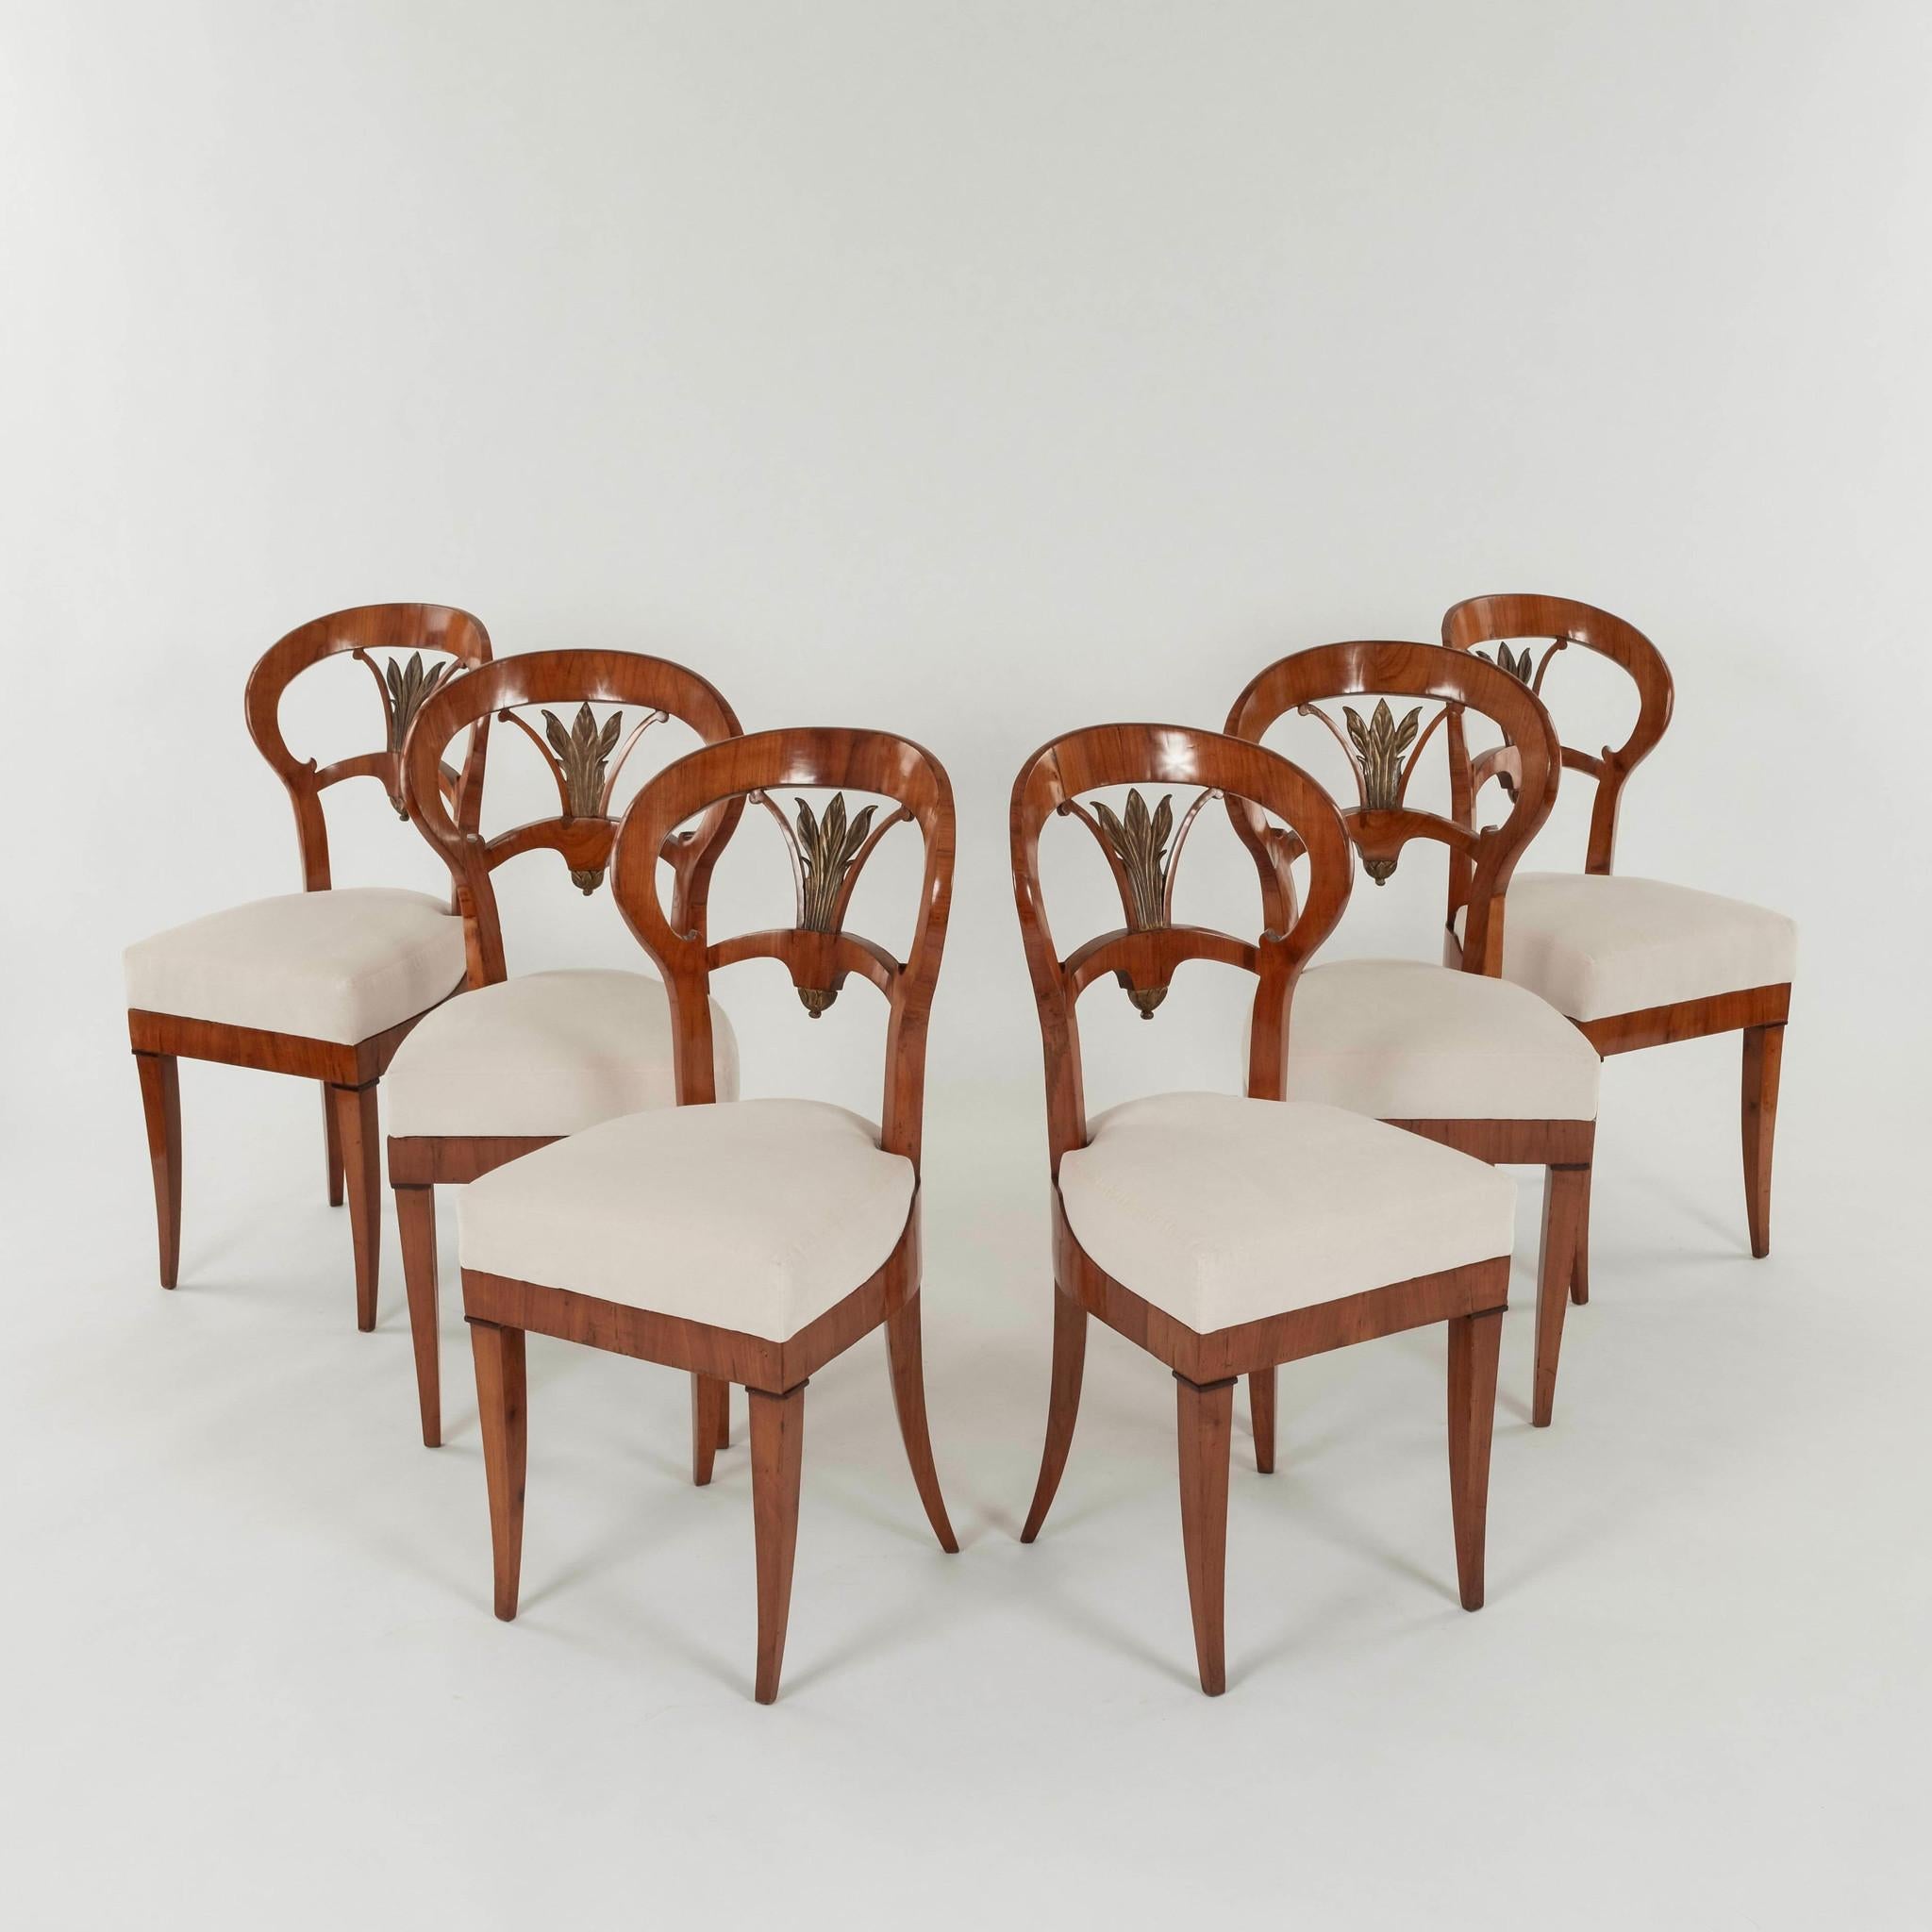 Satz sechs  Biedermeier Esszimmerstühle. Diese hübschen Stühle  weisen handgeschnitzte Details, gemischte Hölzer, Vergoldung und neu gepolsterte Sitze auf.